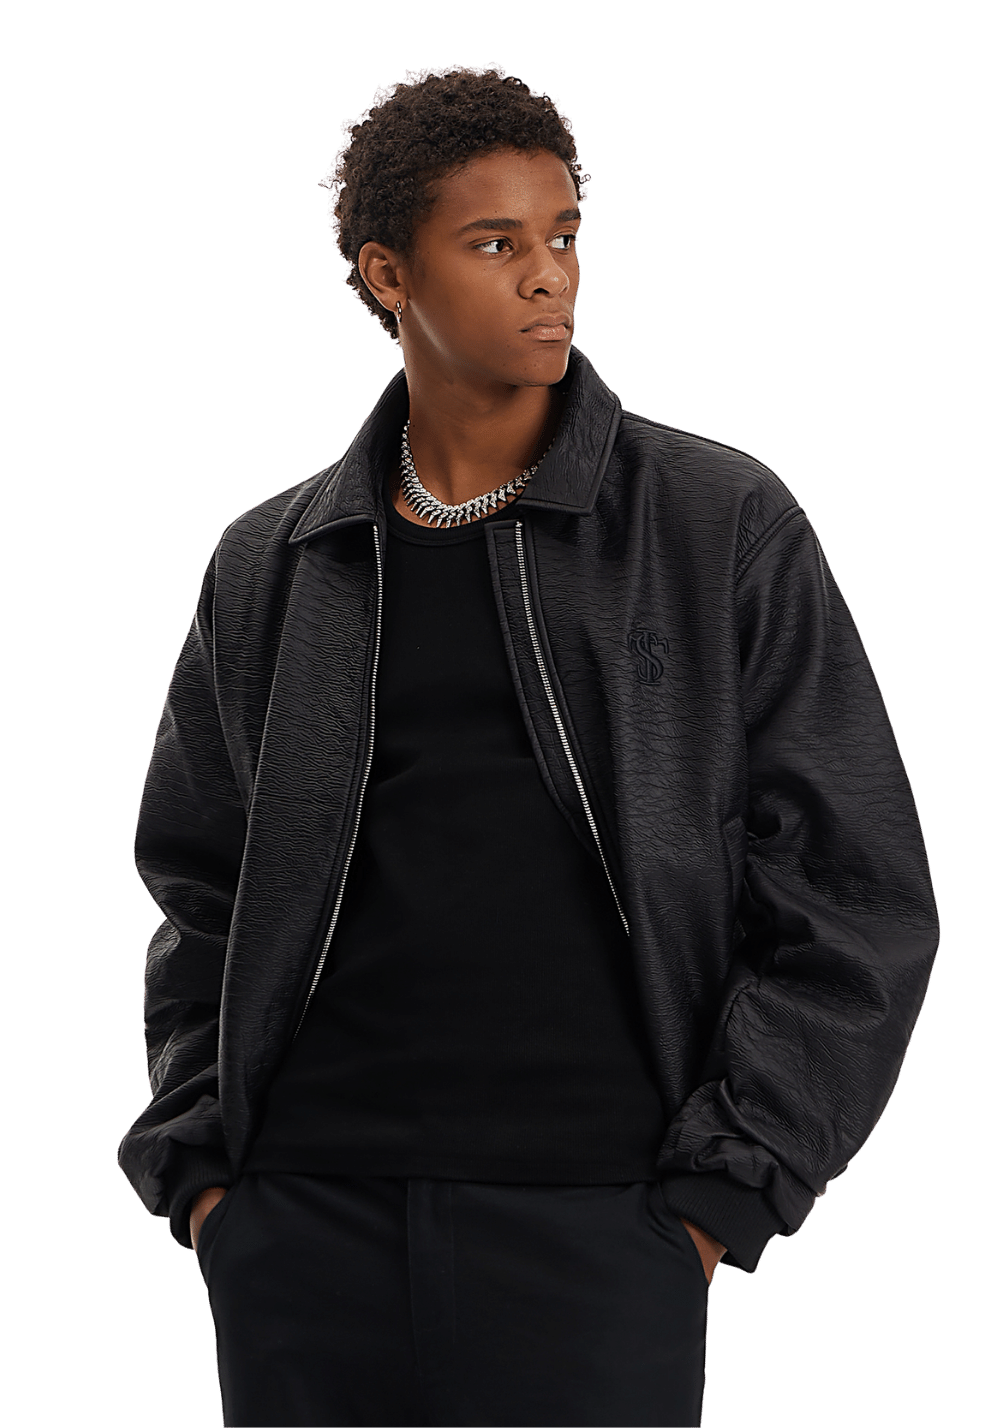 Wrinkled Leather Jacket - PSYLOS 1, Wrinkled Leather Jacket, Jacket, Small Town Kid, PSYLOS 1